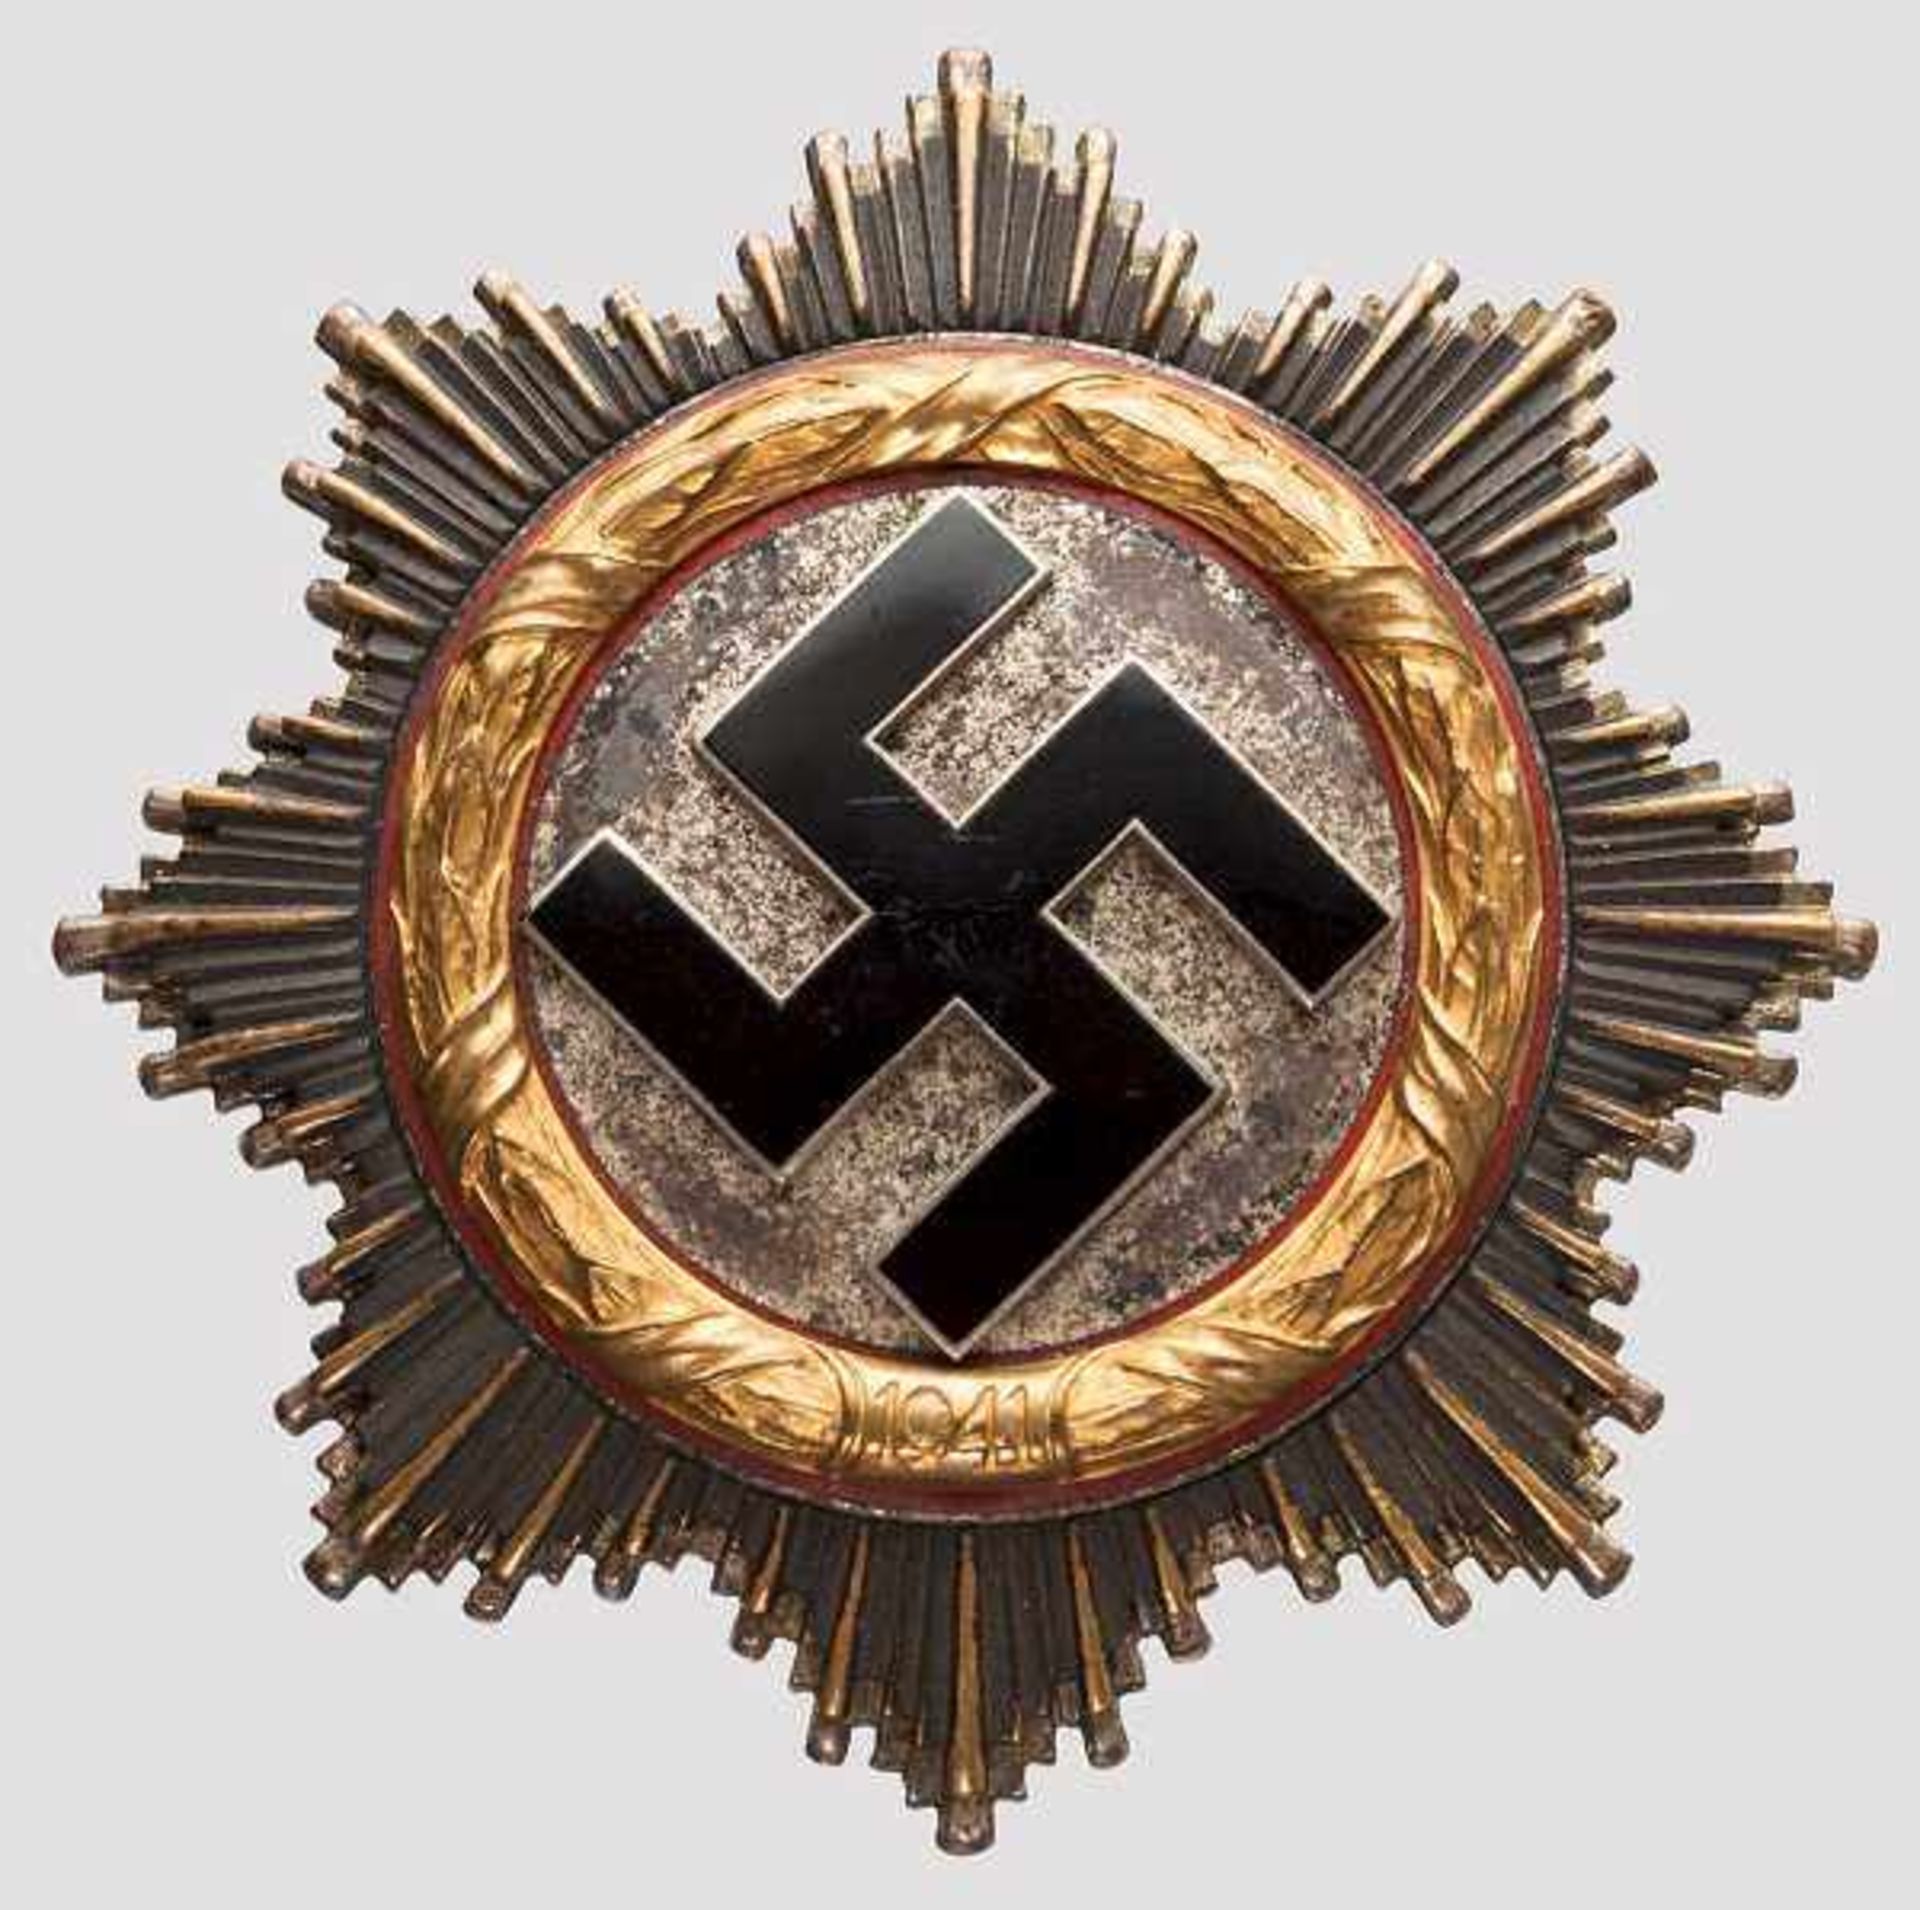 Deutsches Kreuz in Gold - Zimmermann-Fertigung Typisch leichte Ausführung der Firma C.F.